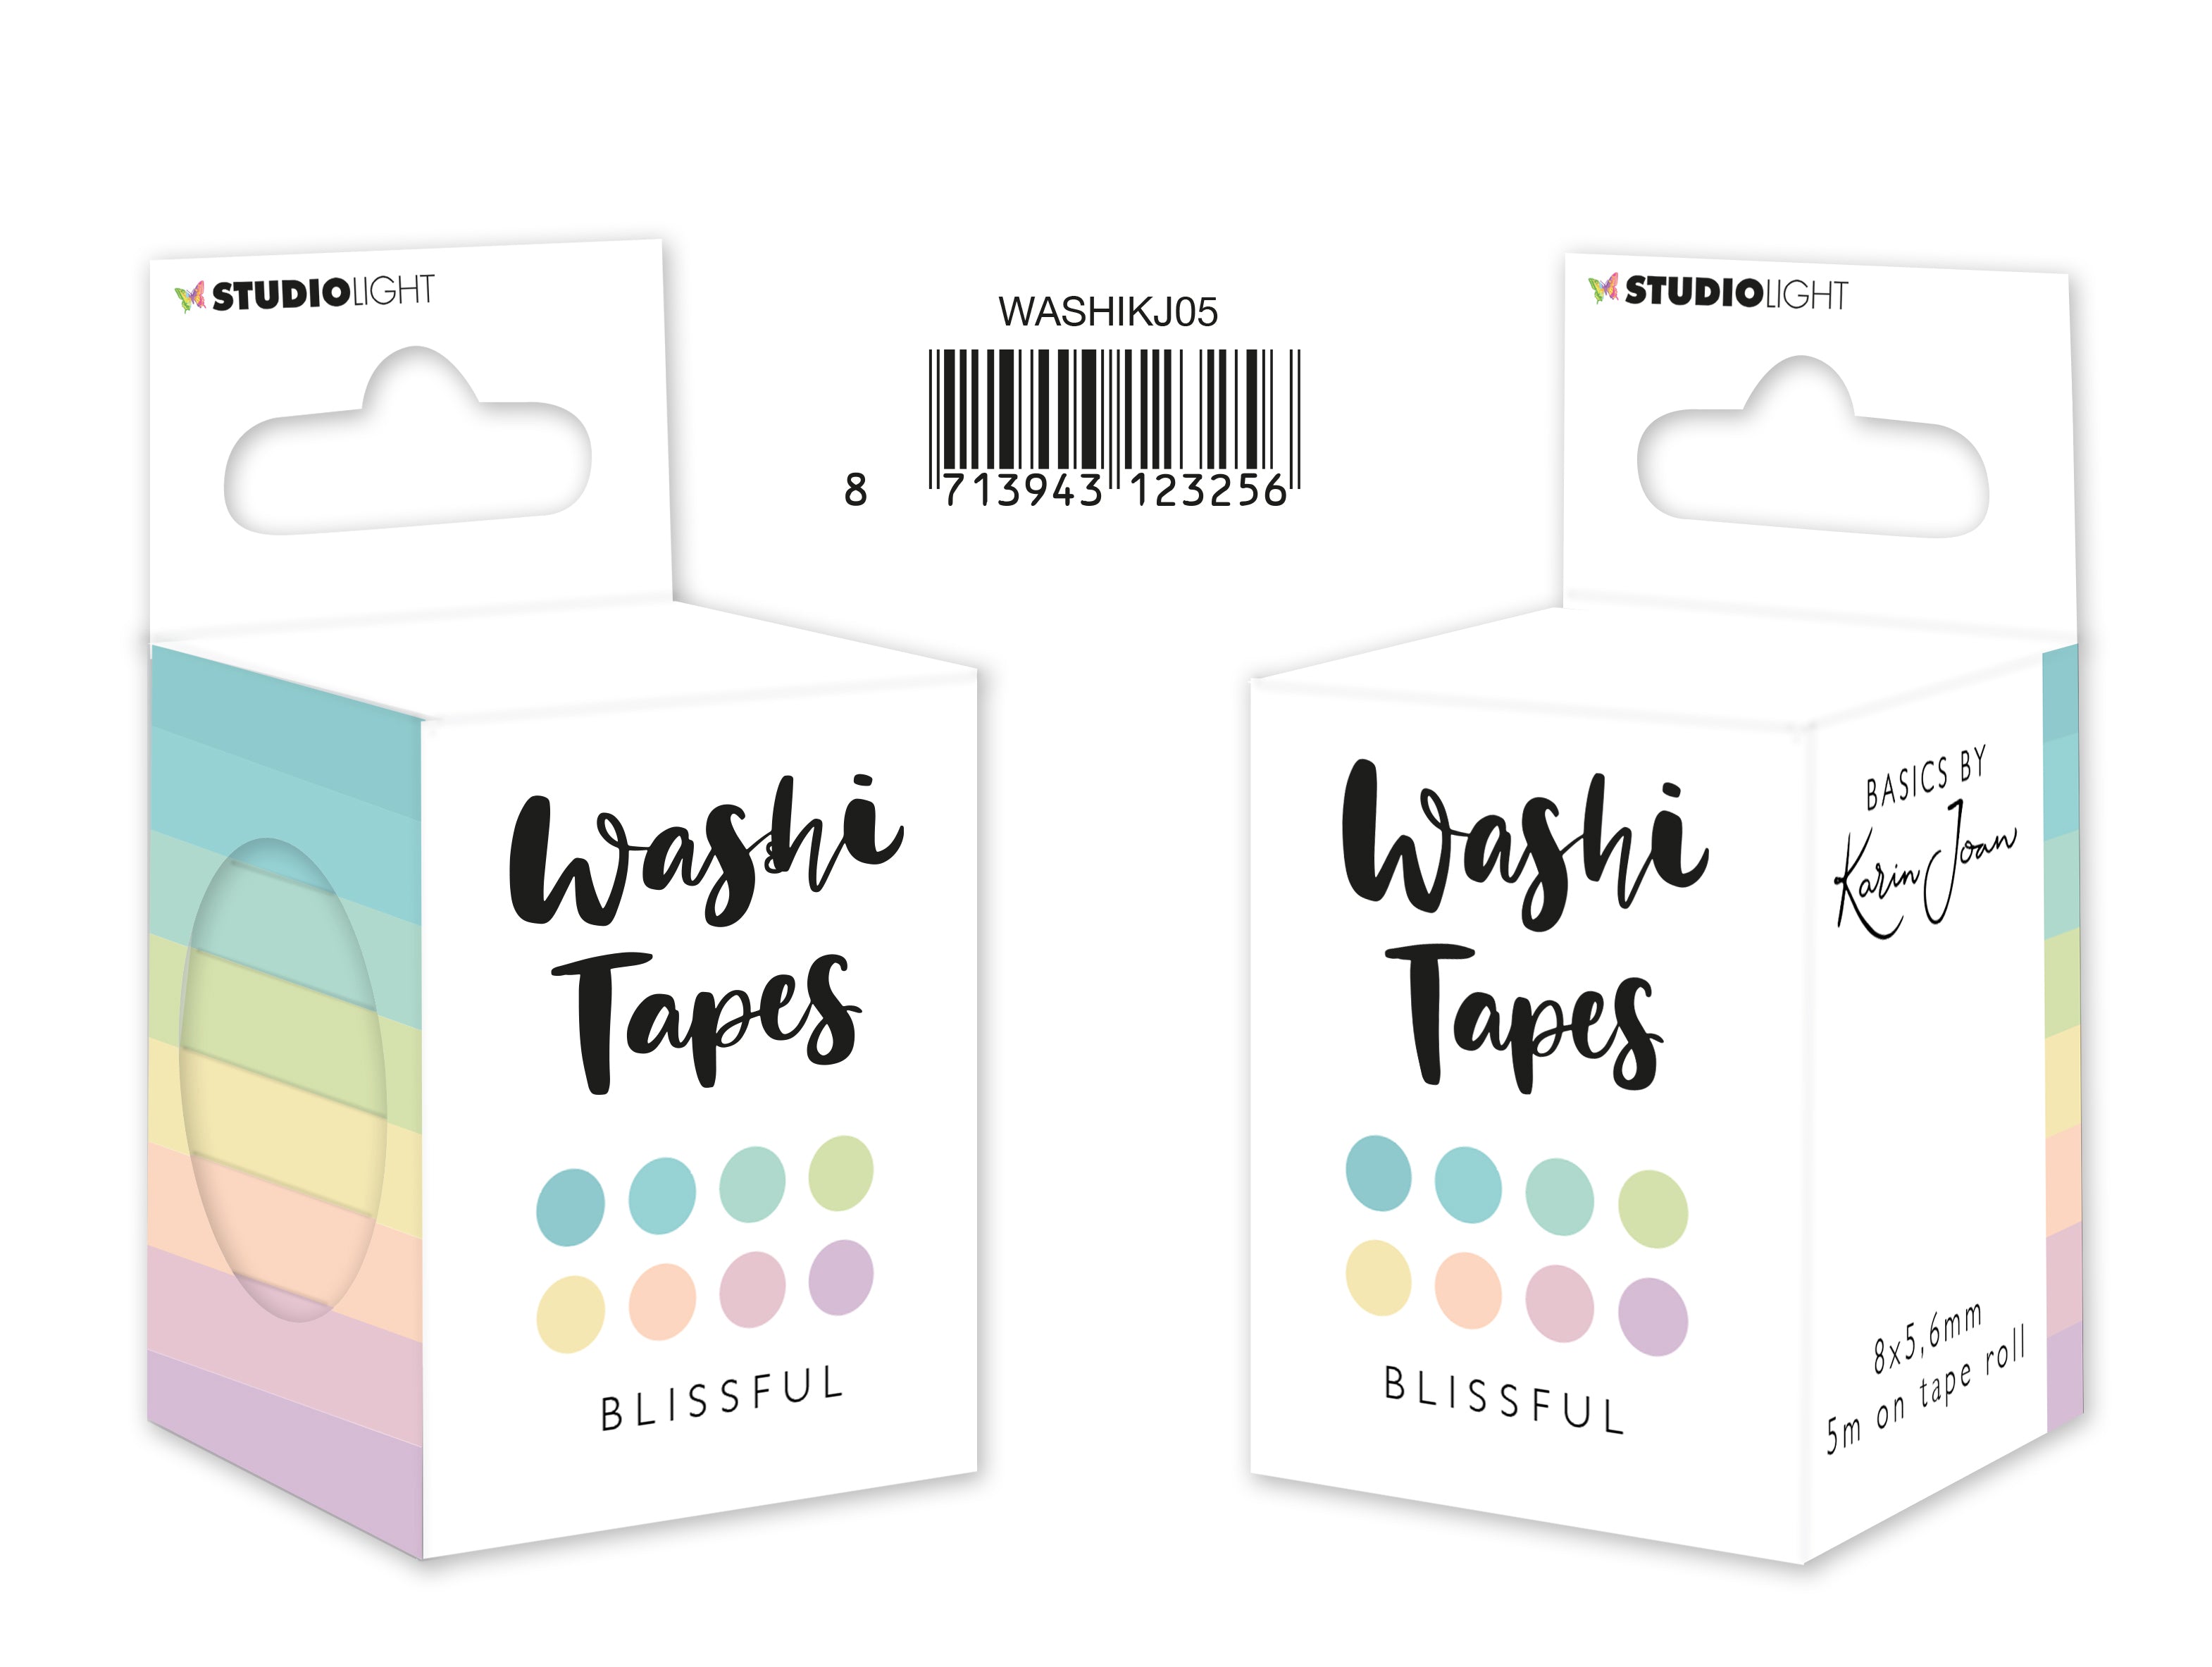 Karin Joan Washi Tape Blissful Pastels Basics by Karin Joan nr.5